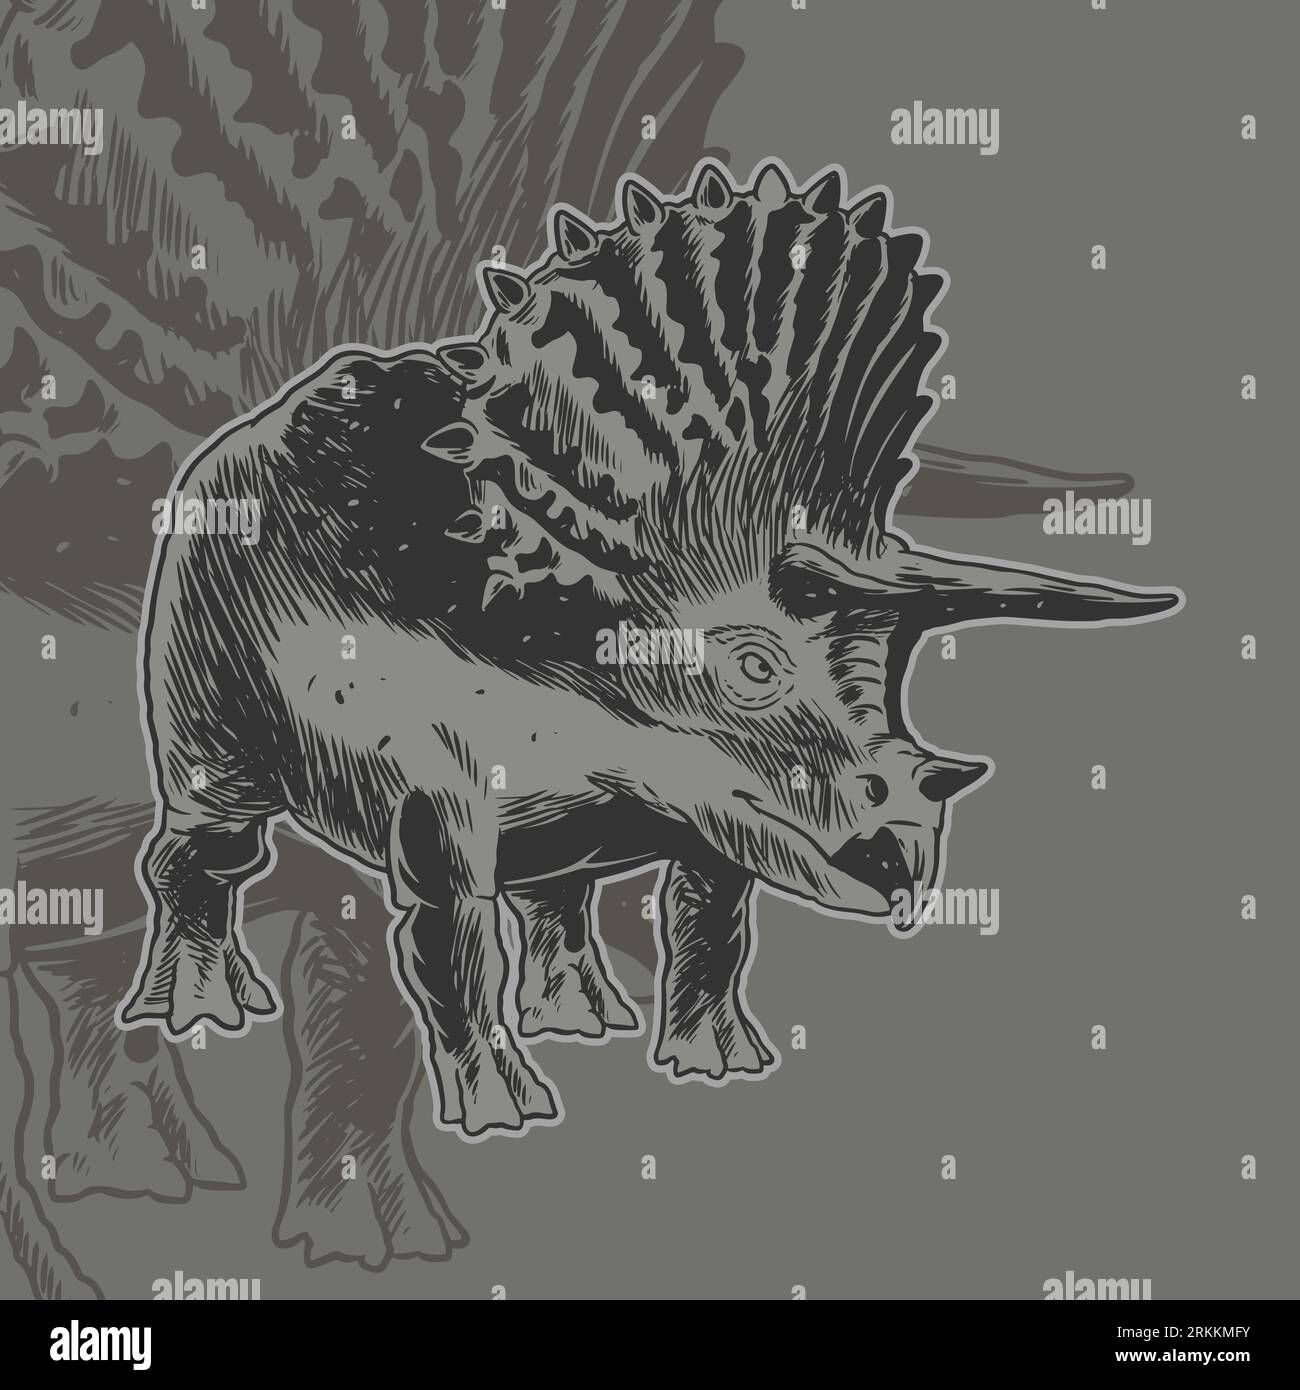 Triceratops dinosauro disegnato a mano. Dinosauro erbivoro. Concetto di mascotte animale preistorico. Design grafico per t-shirt bambini. Illustrazione vettoriale Illustrazione Vettoriale